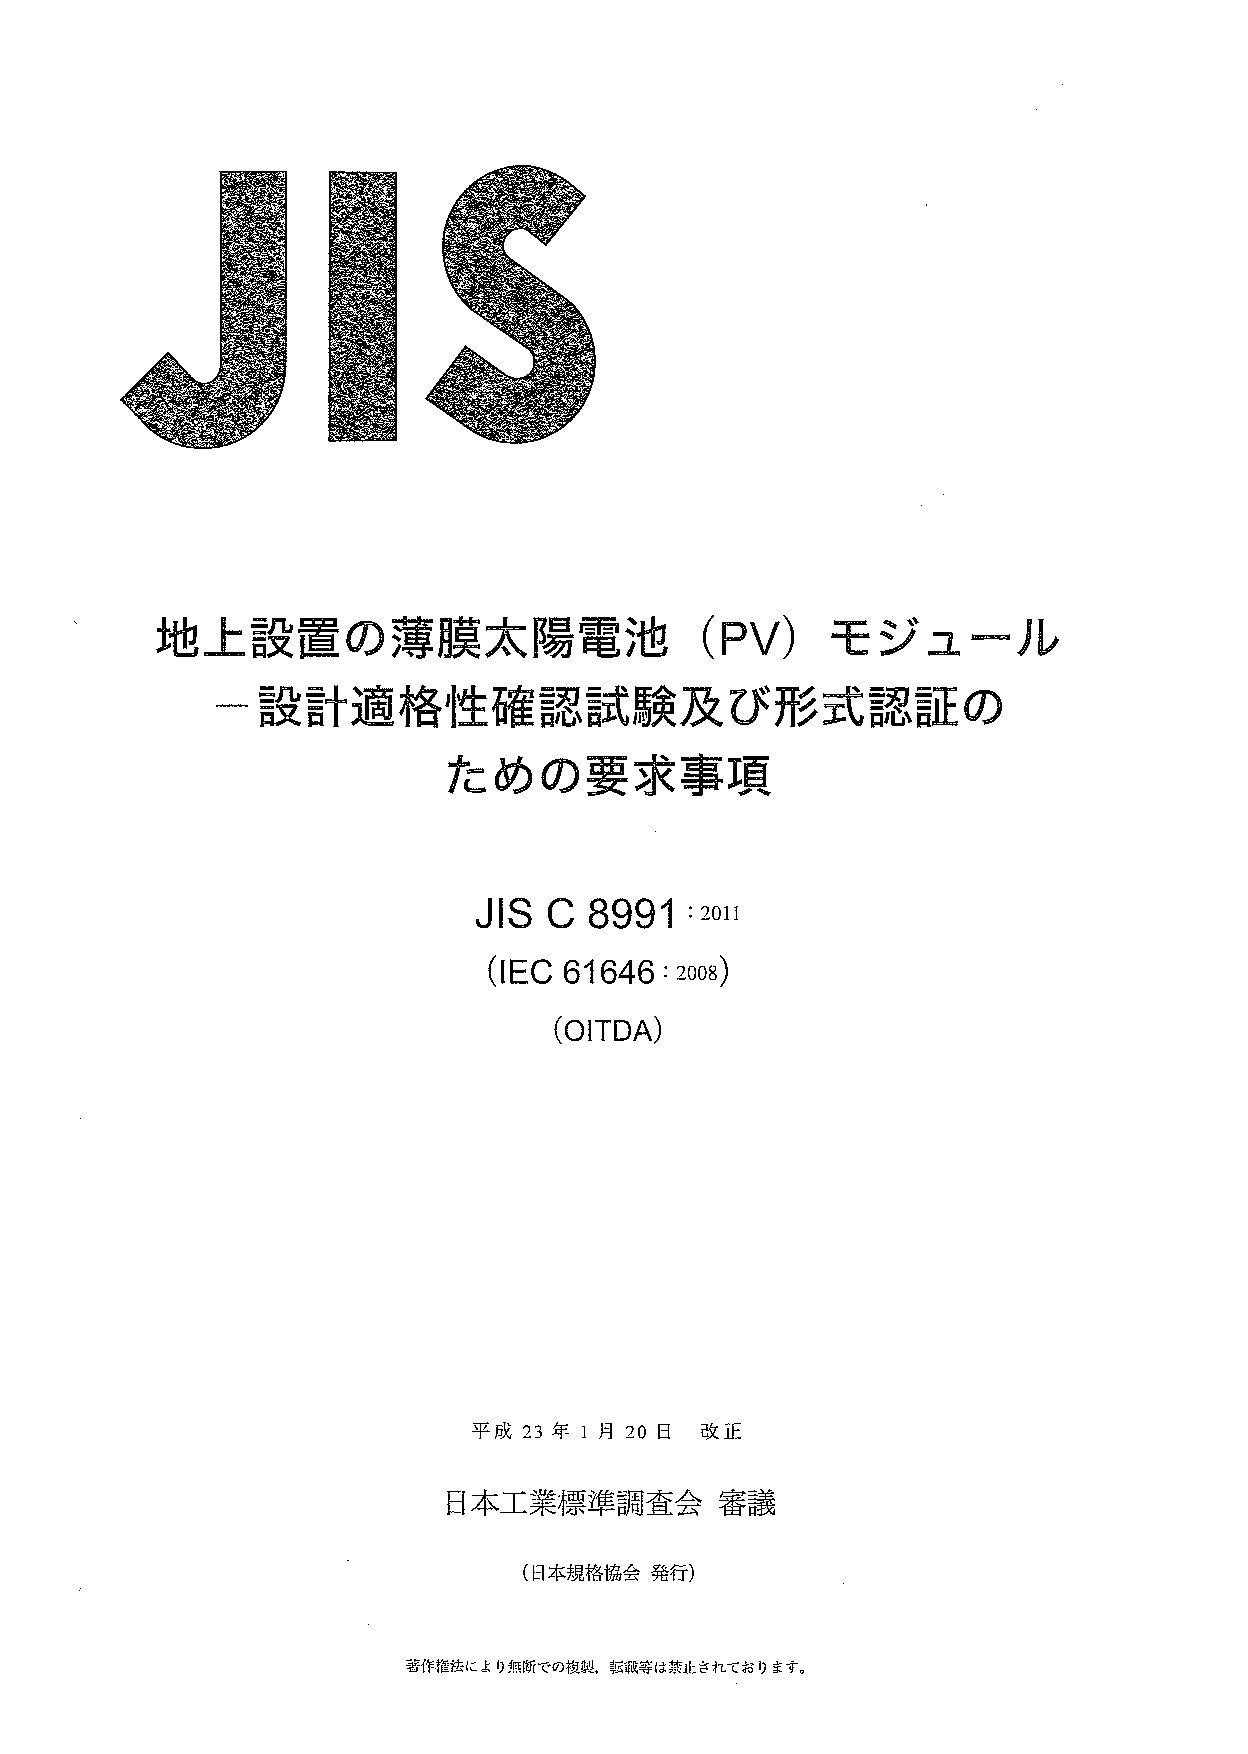 JIS C 8991:2011封面图